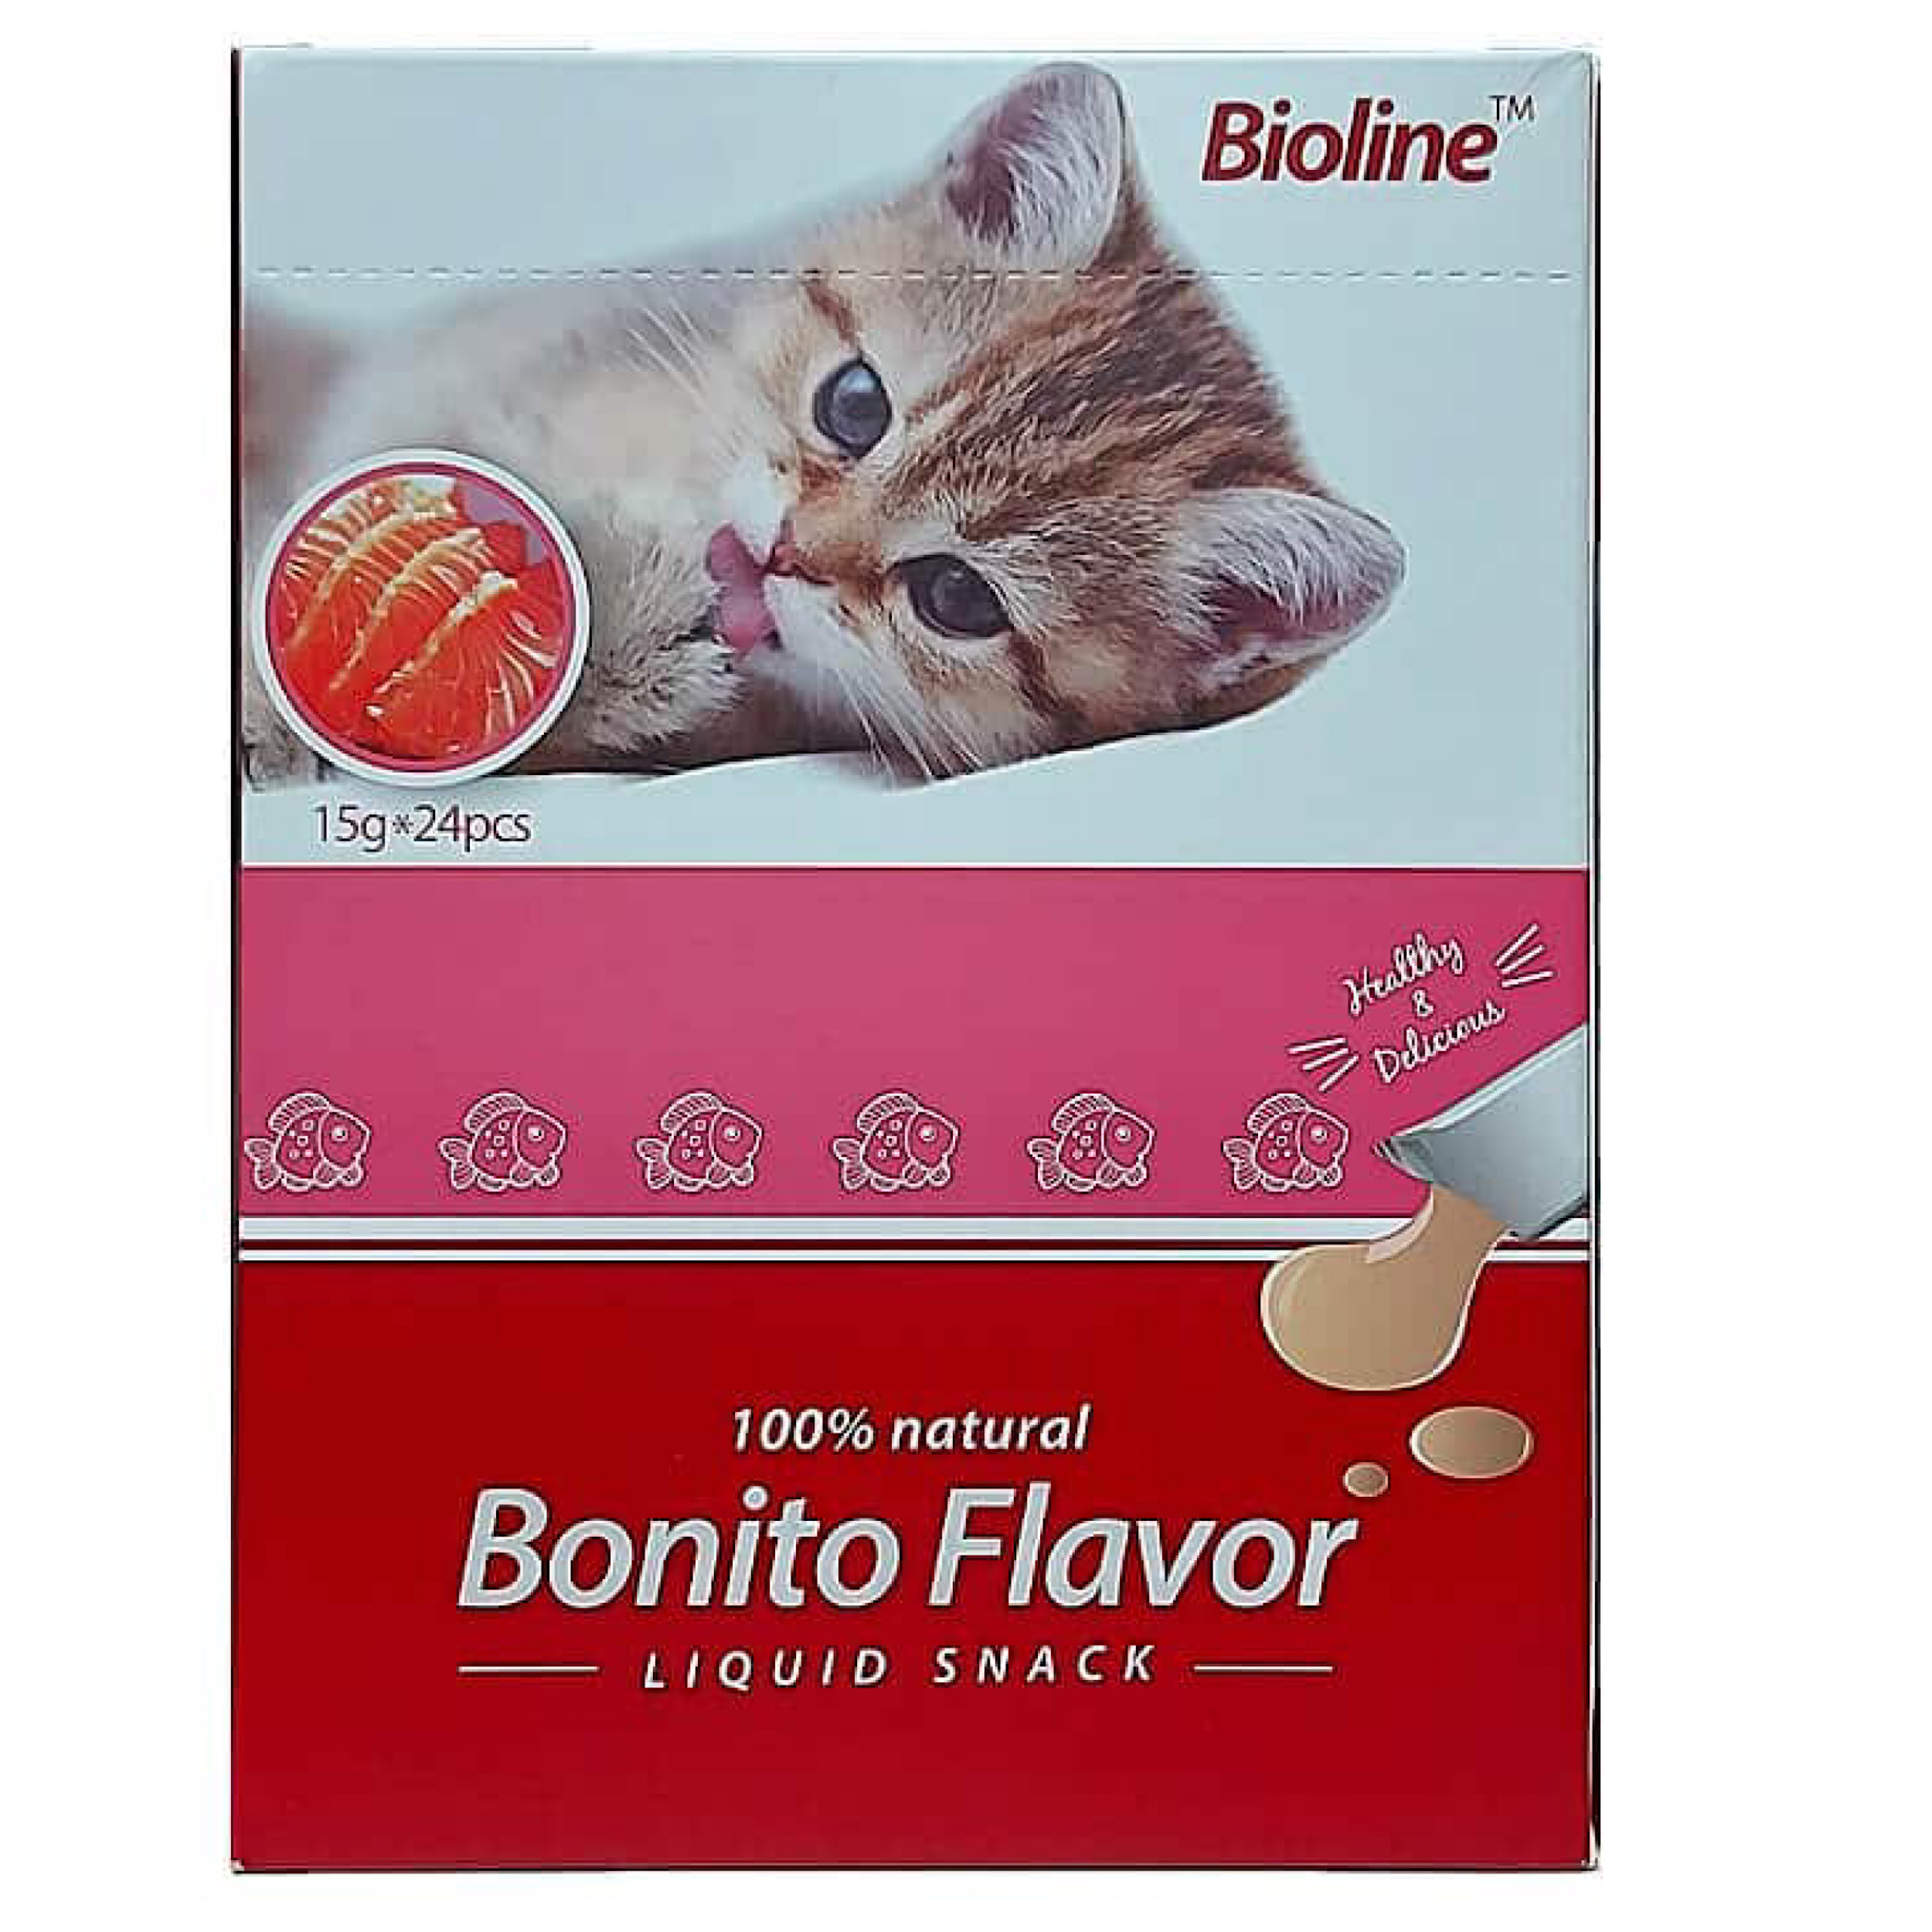 اسنک گربه بیولاین مدل Bonito flavor وزن 15 گرم بسته 24 عددی